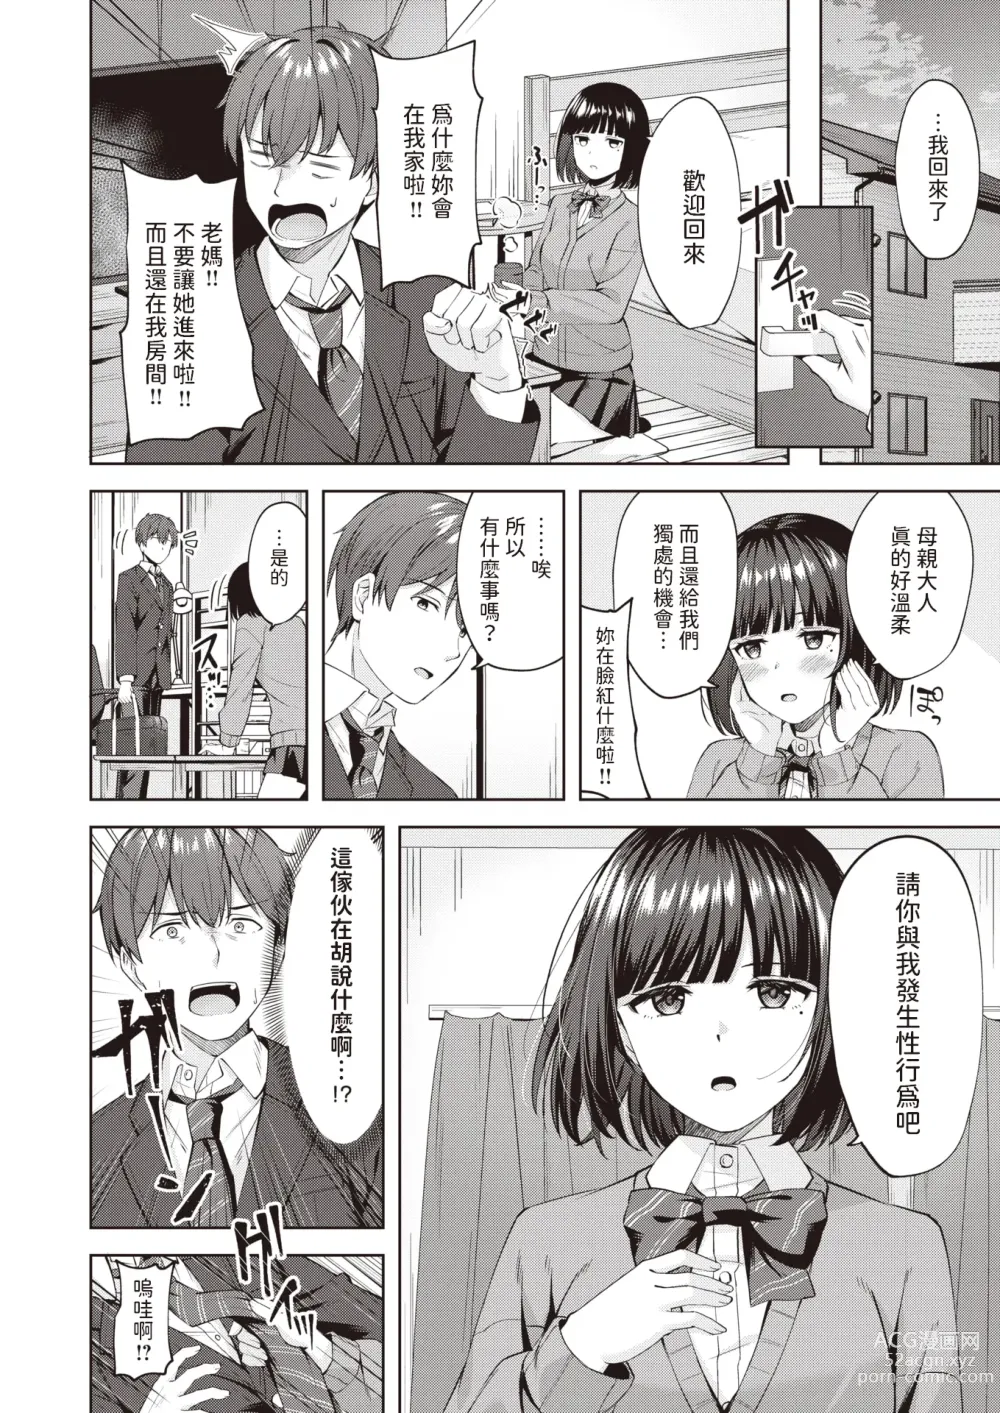 Page 6 of manga Sweet Stalking